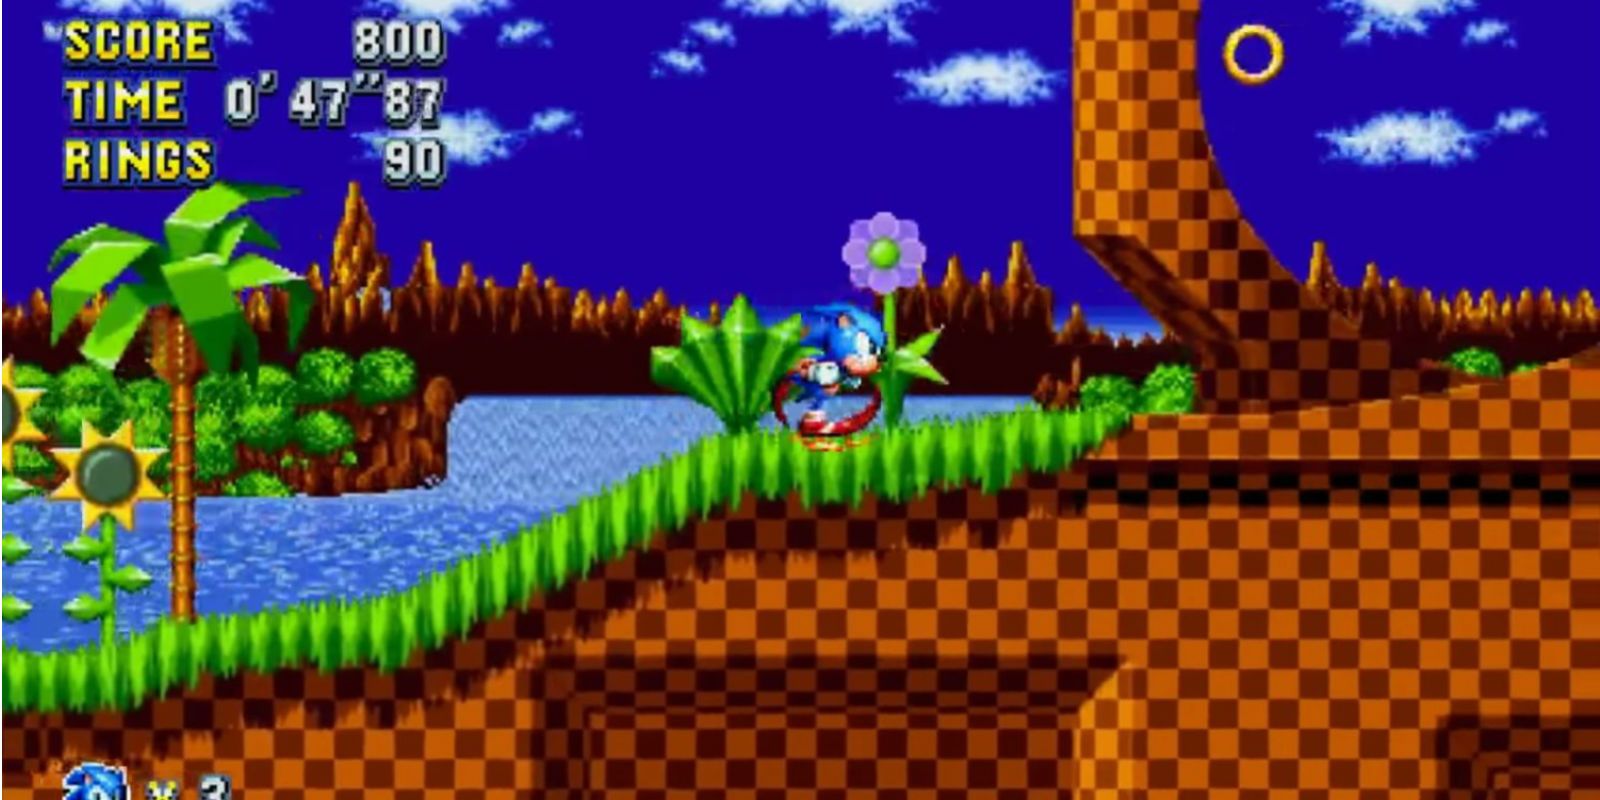 Sonic The Hedgehog being played on the original Sega Genesis.